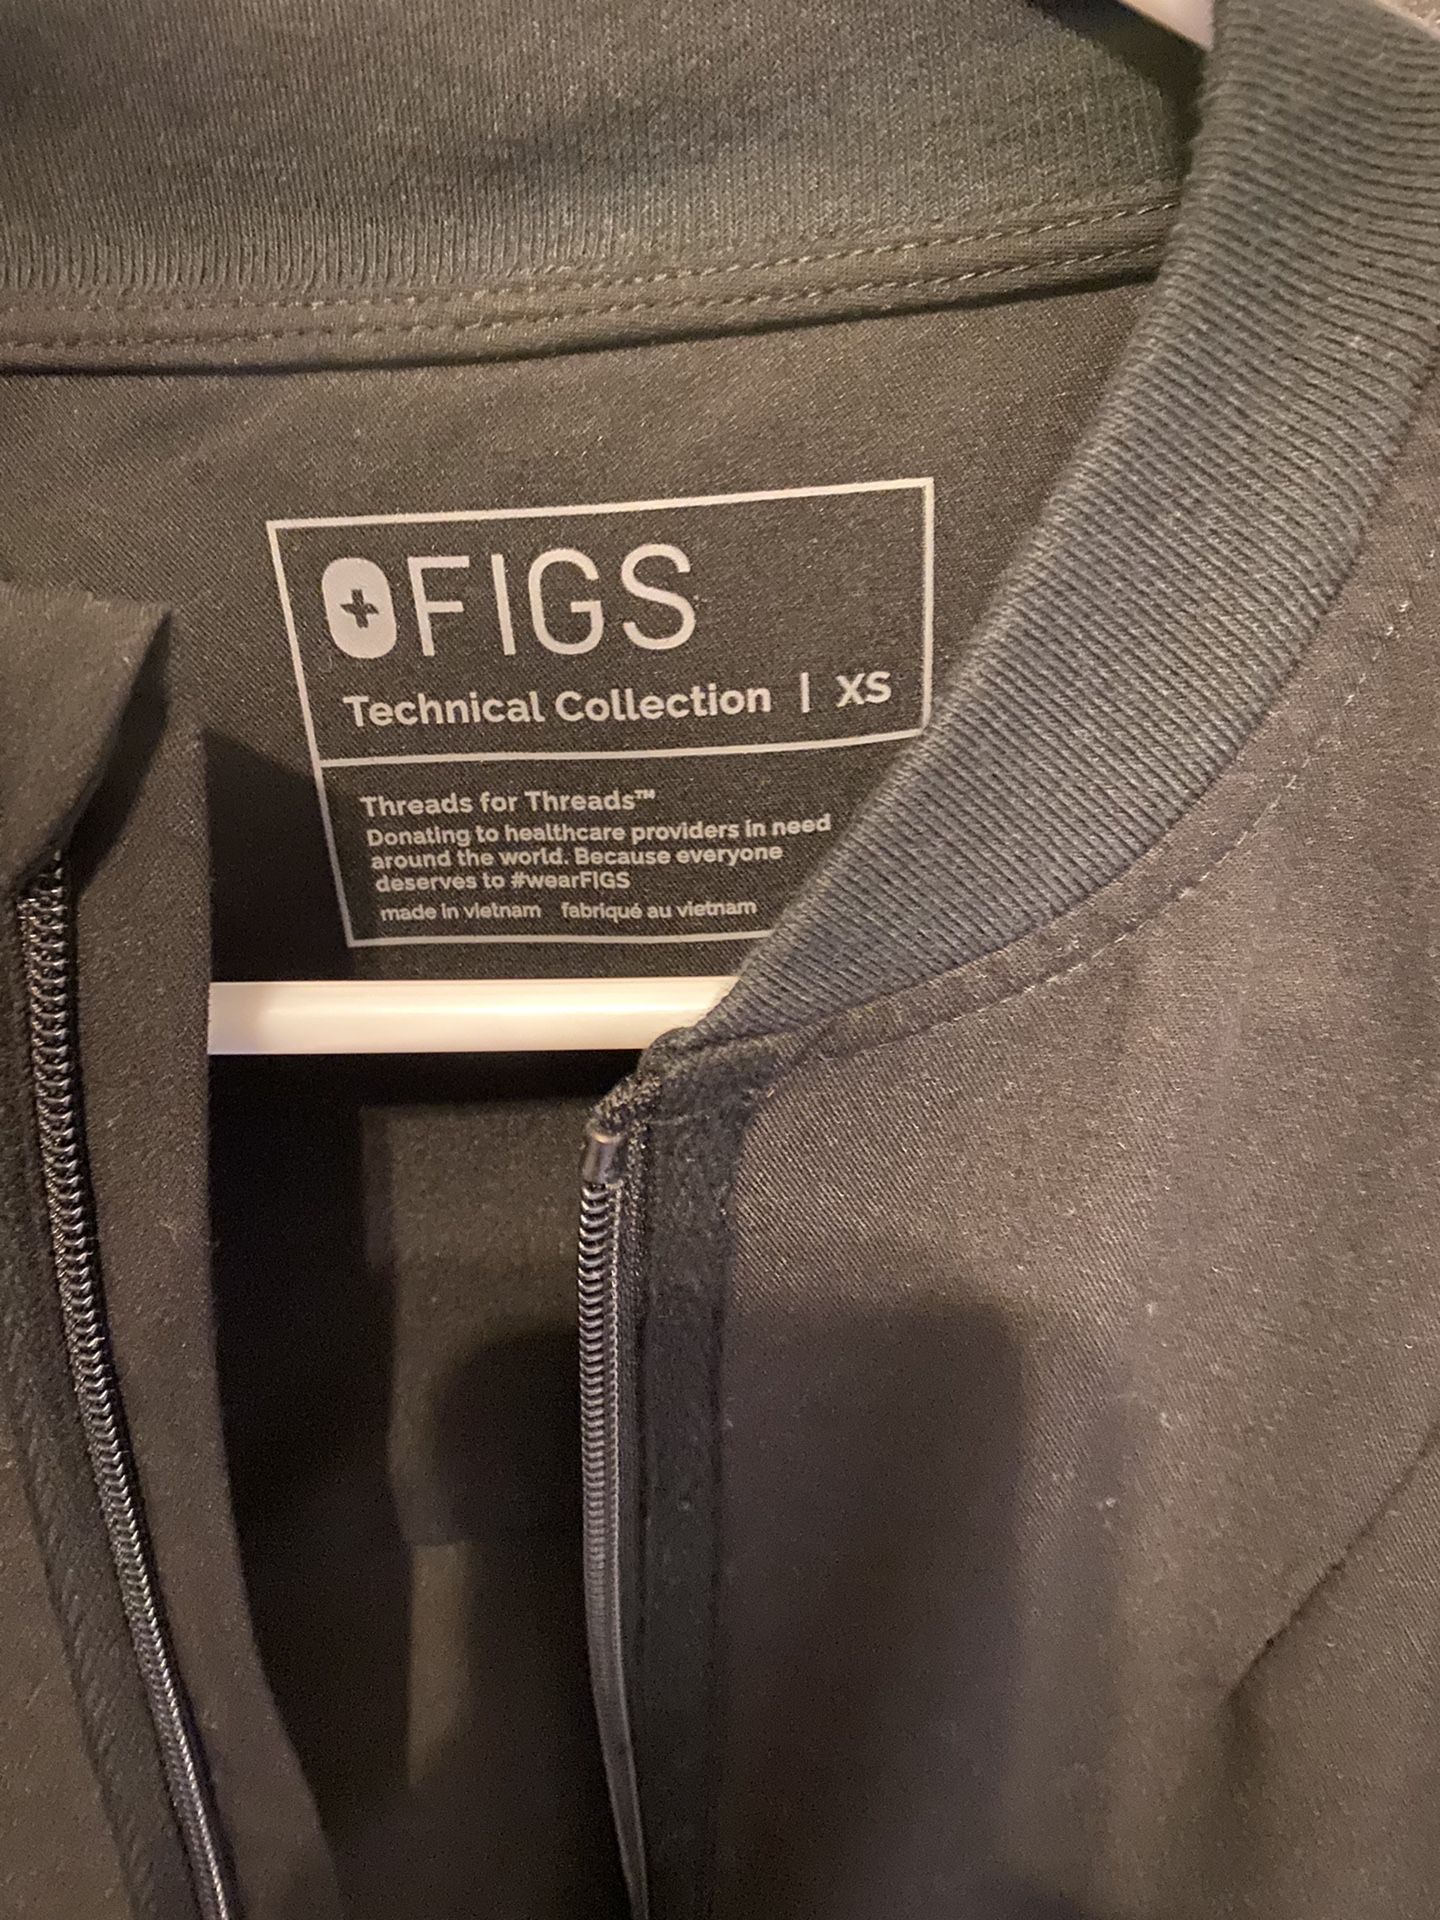 FIGS Bellery Scrub Jacket for Sale in Gilbert, AZ - OfferUp